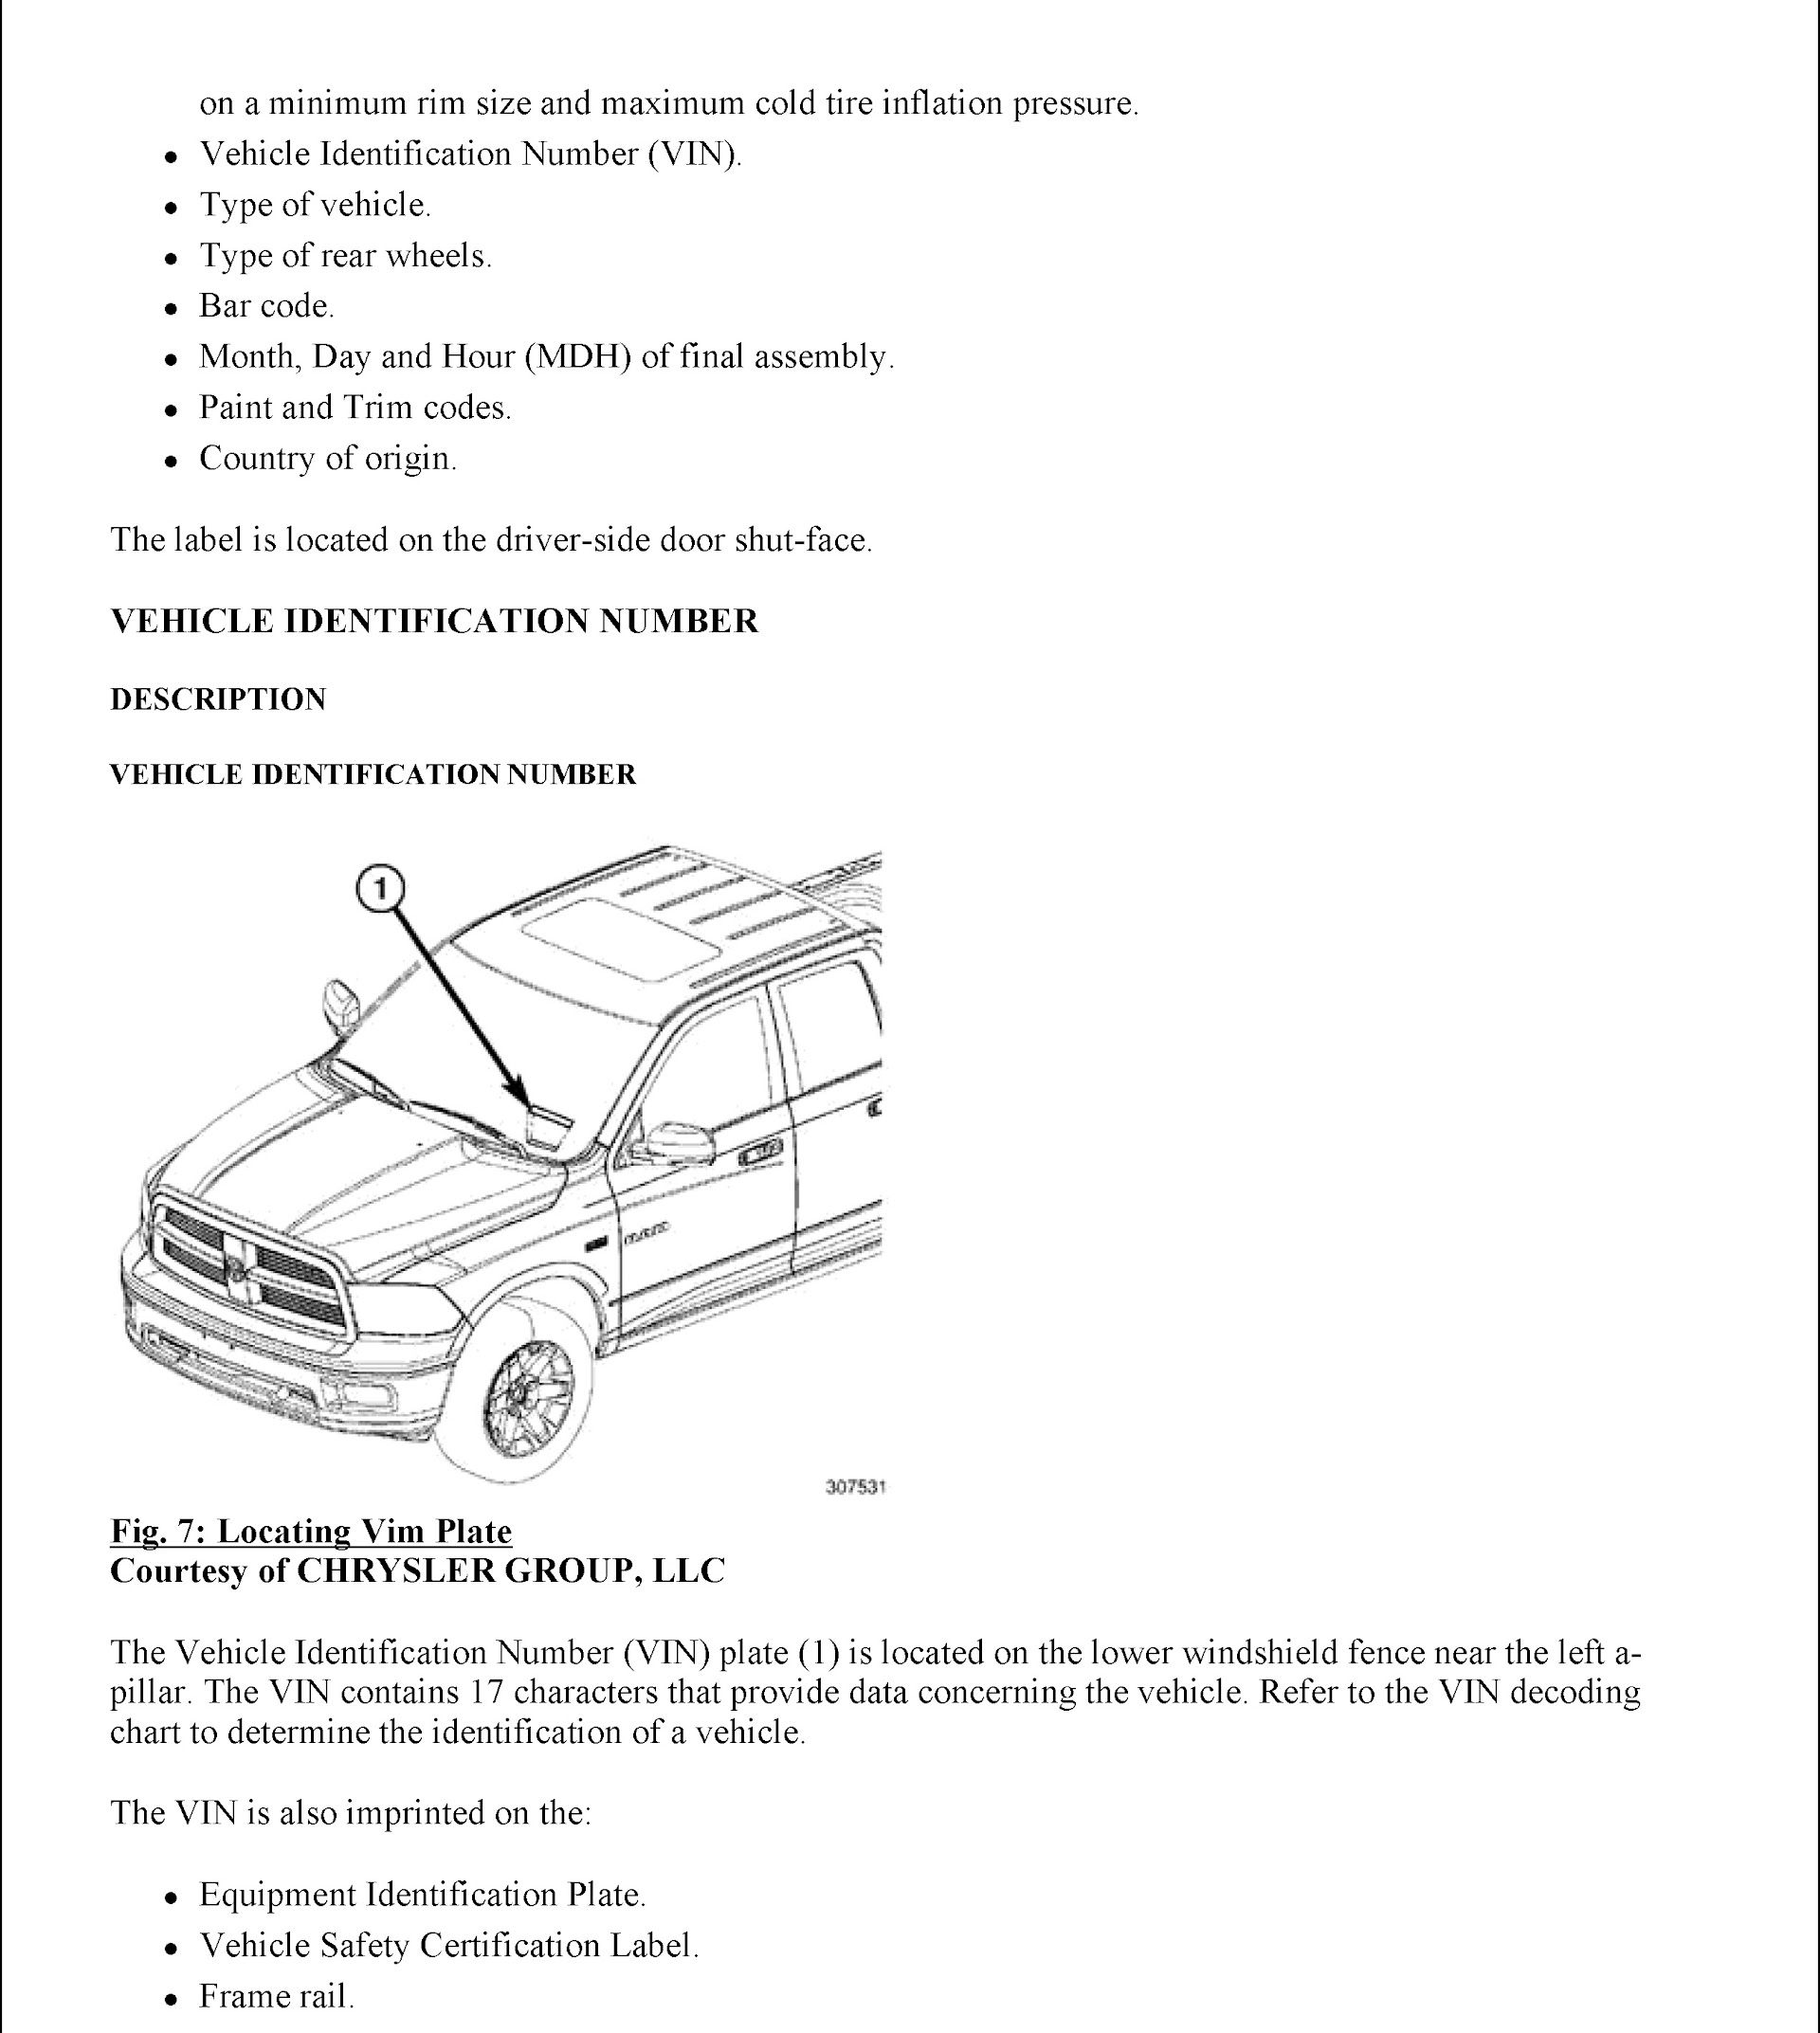 2012 Dodge Ram 3500 2500 Repair Manual, Vin Plate Location